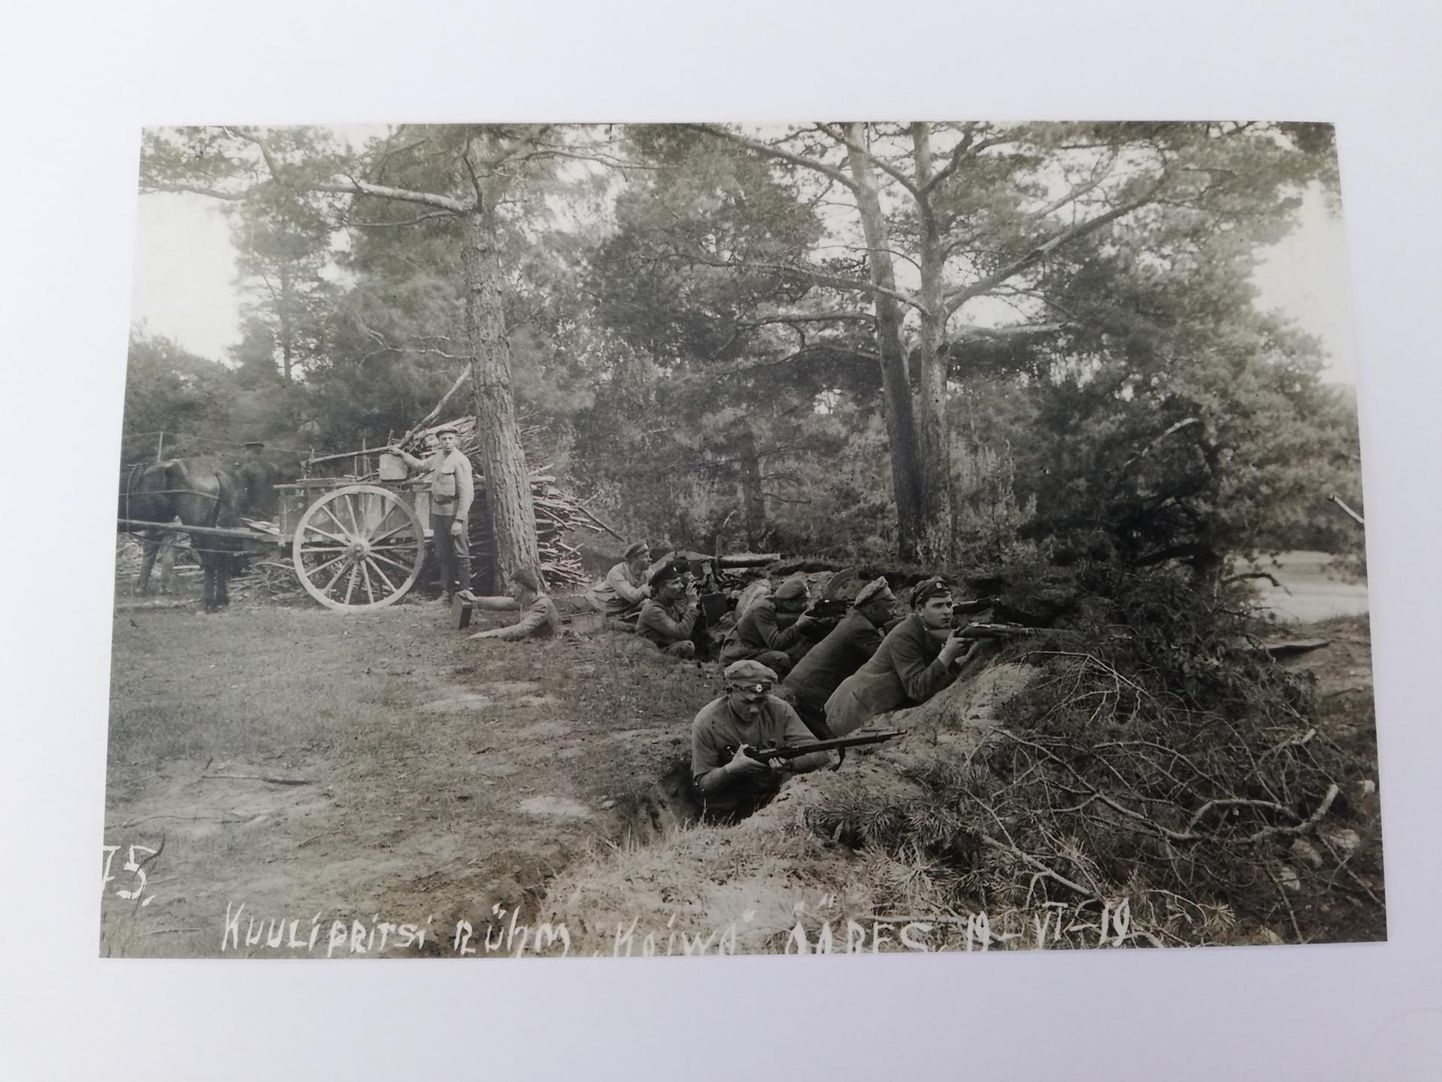 6. jalaväepolgu kuulipritsirühm Koiva jõe ääres 19. juunil 1919.